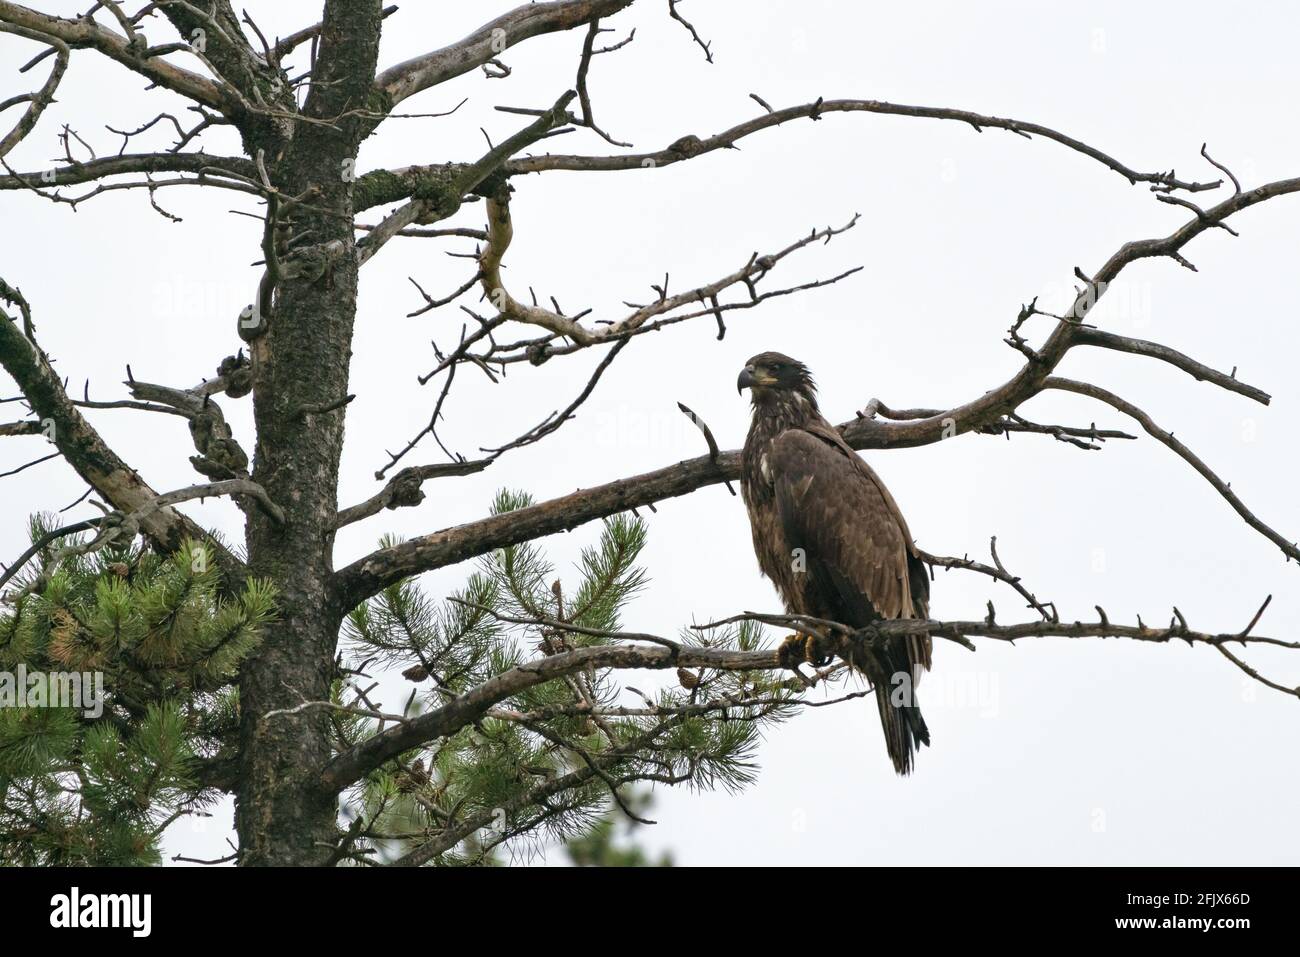 Goldener Adler sitzt an einem regnerischen Tag auf einem Baum. Greifvögel. Aquila chrysaetos. Tierwelt im Jasper National Park, Alberta, Kanada. Vögel von Nord Amer Stockfoto